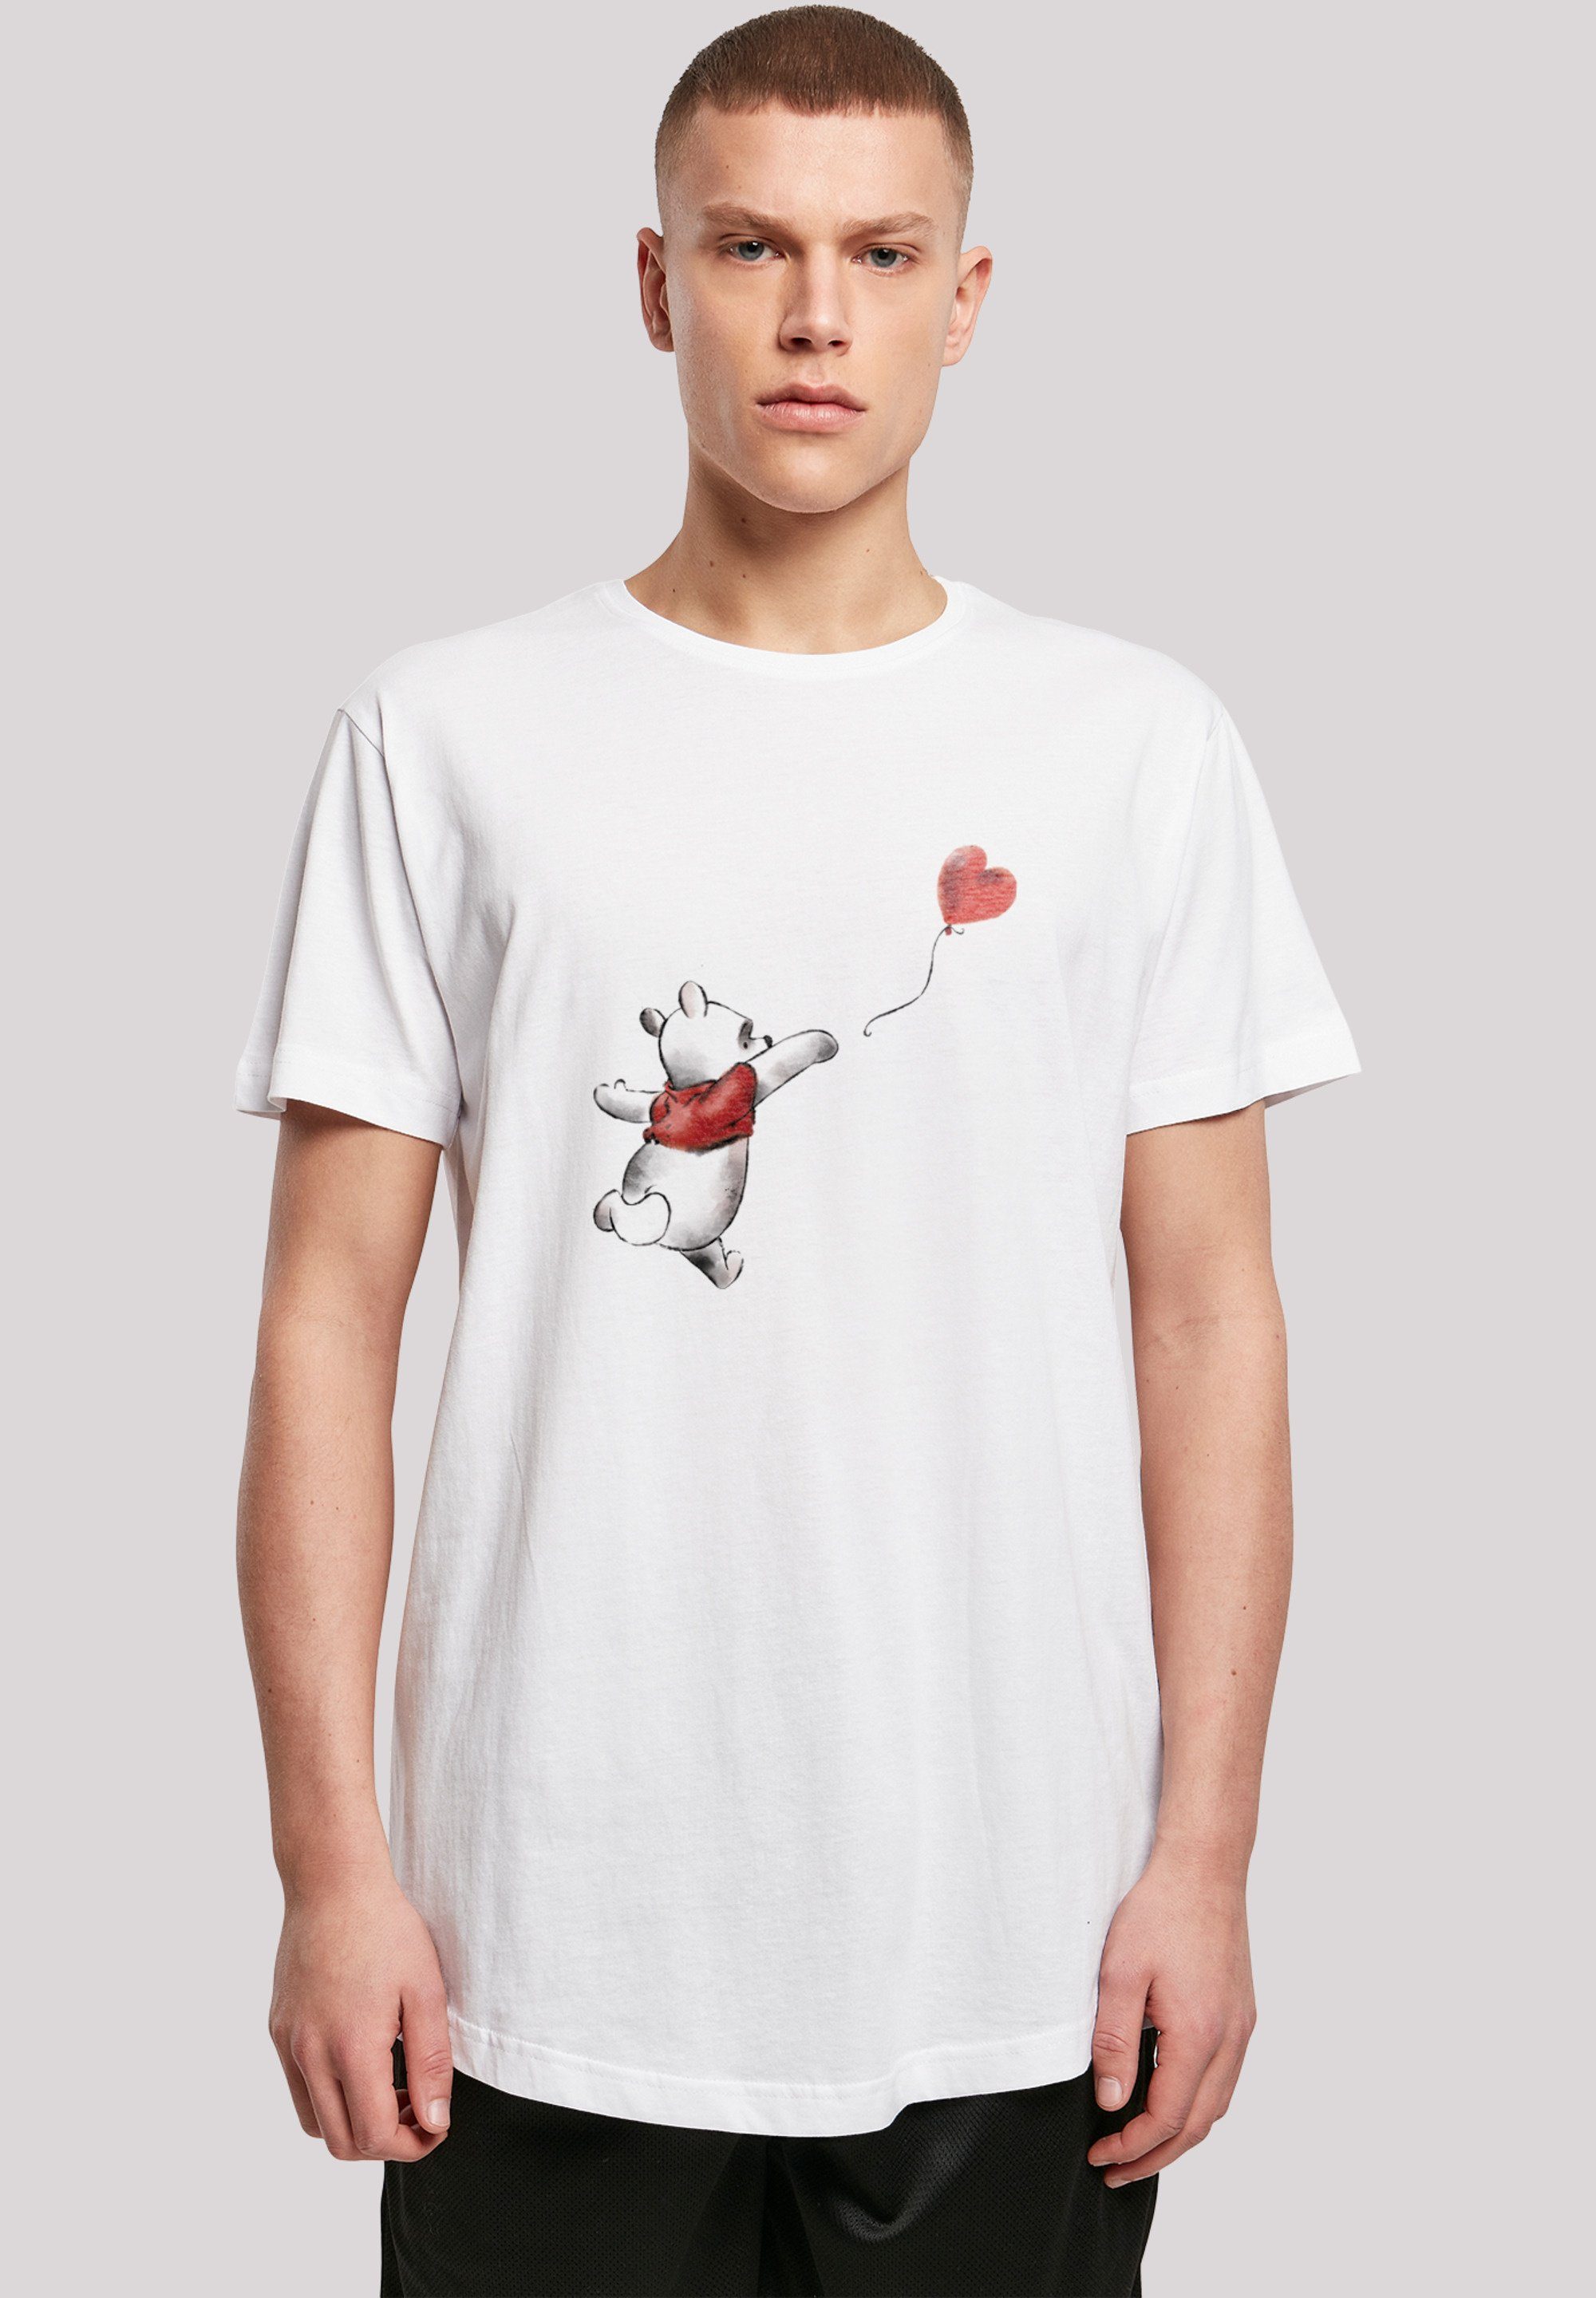 & Tragekomfort Balloon\' Winnie Puuh weicher Sehr Winnie T-Shirt mit hohem Baumwollstoff F4NT4STIC Print,